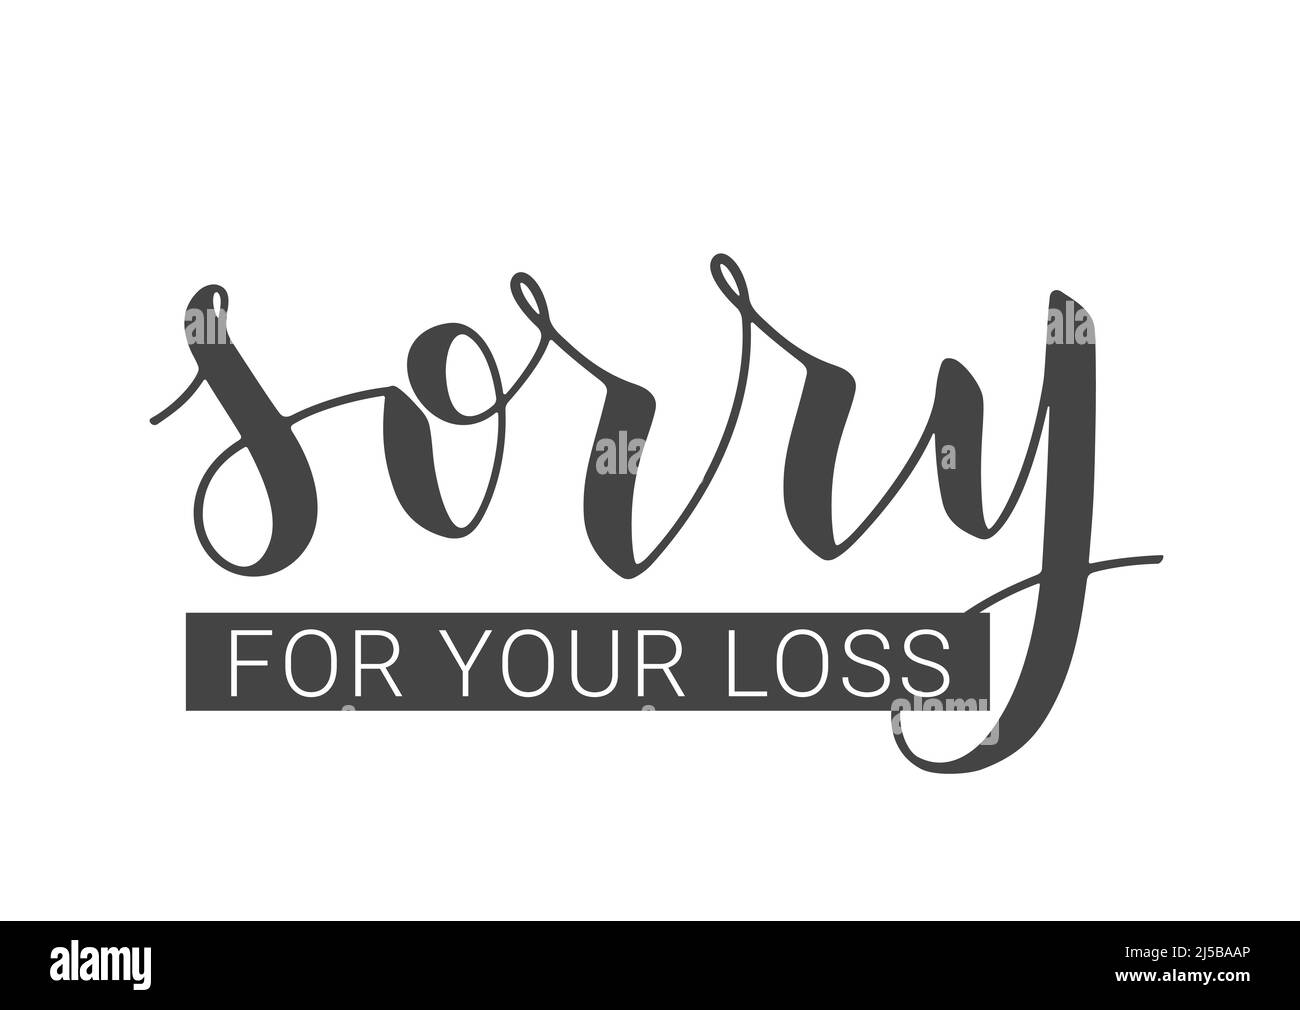 Vektorgrafik. Handgeschriebene Schriftzüge von Sorry for Your Loss. Vorlage für Banner, Postkarte, Poster, Print, Sticker oder Webprodukt. Stock Vektor